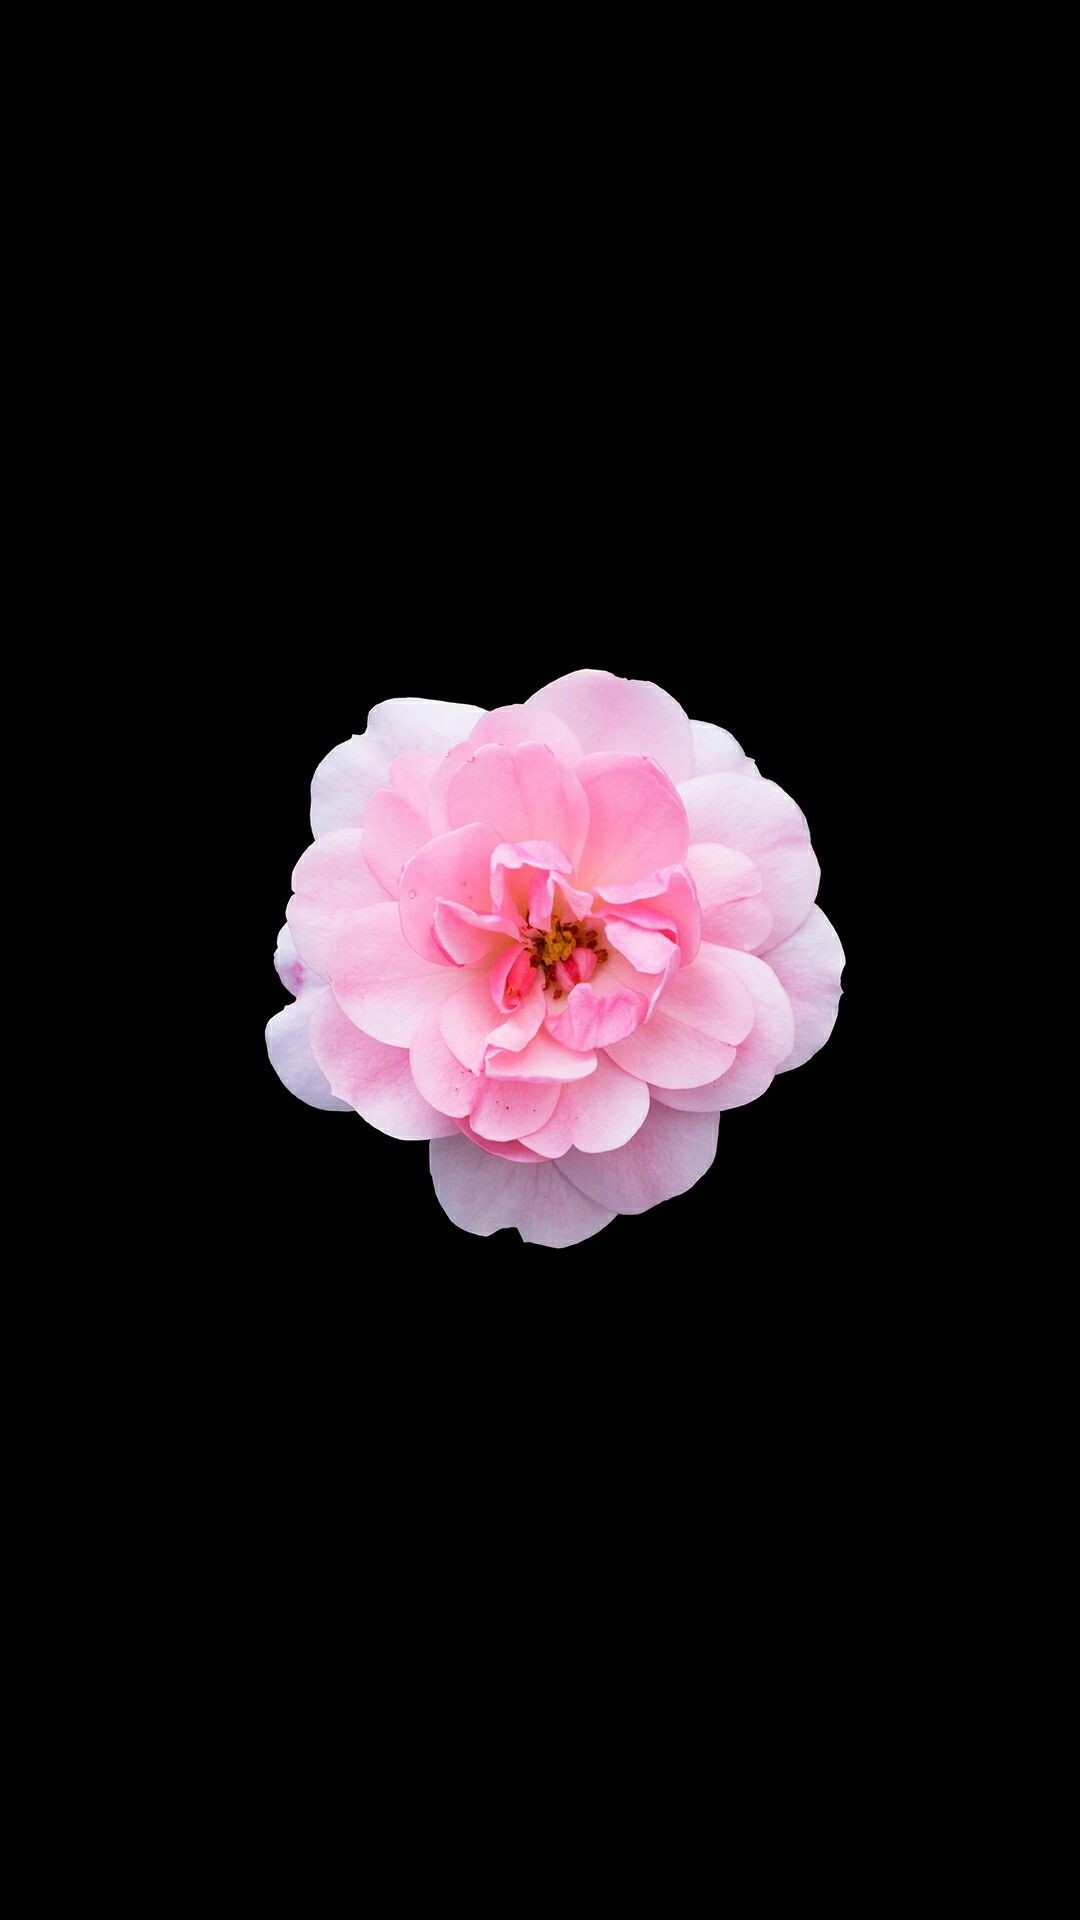 1080x1920 iPhone flower wallpaper.